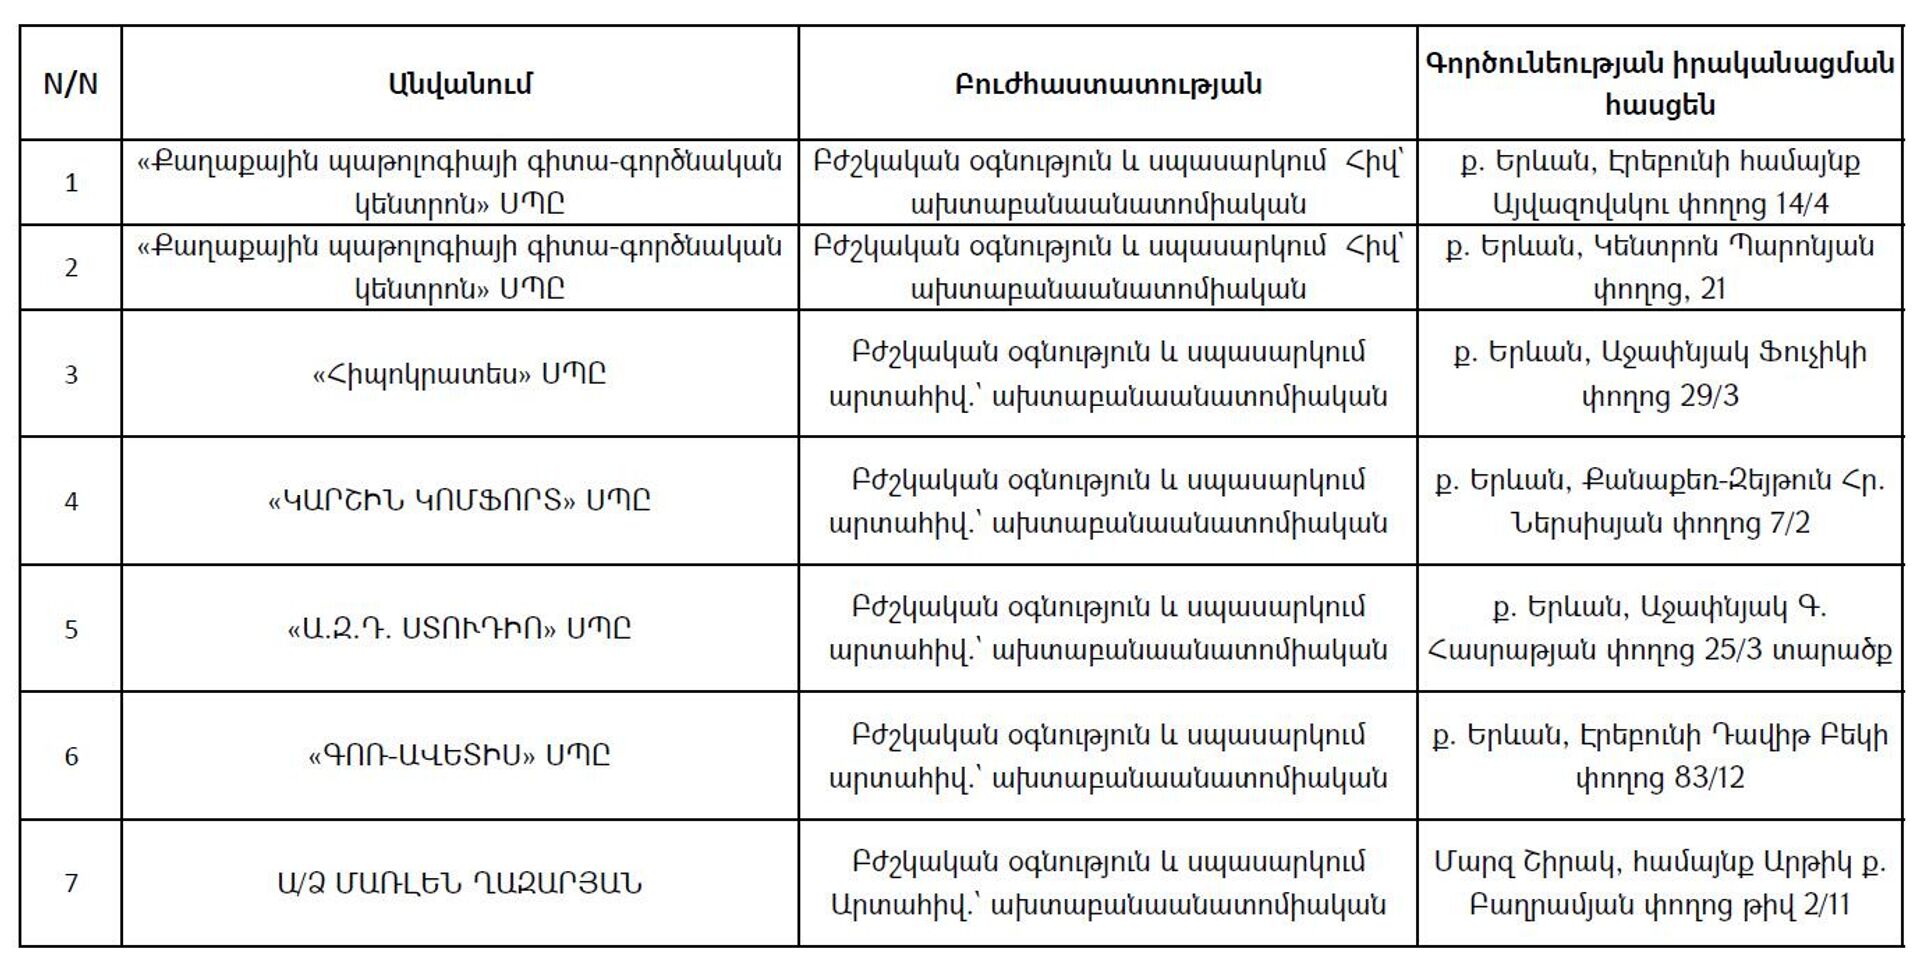 ՀՀ առողջապահության նախարարության տրամադրած մասնավոր դիահերձարանների ցանկը 2022թ․ մարտի 29-ի դրությամբ - Sputnik Արմենիա, 1920, 14.04.2022